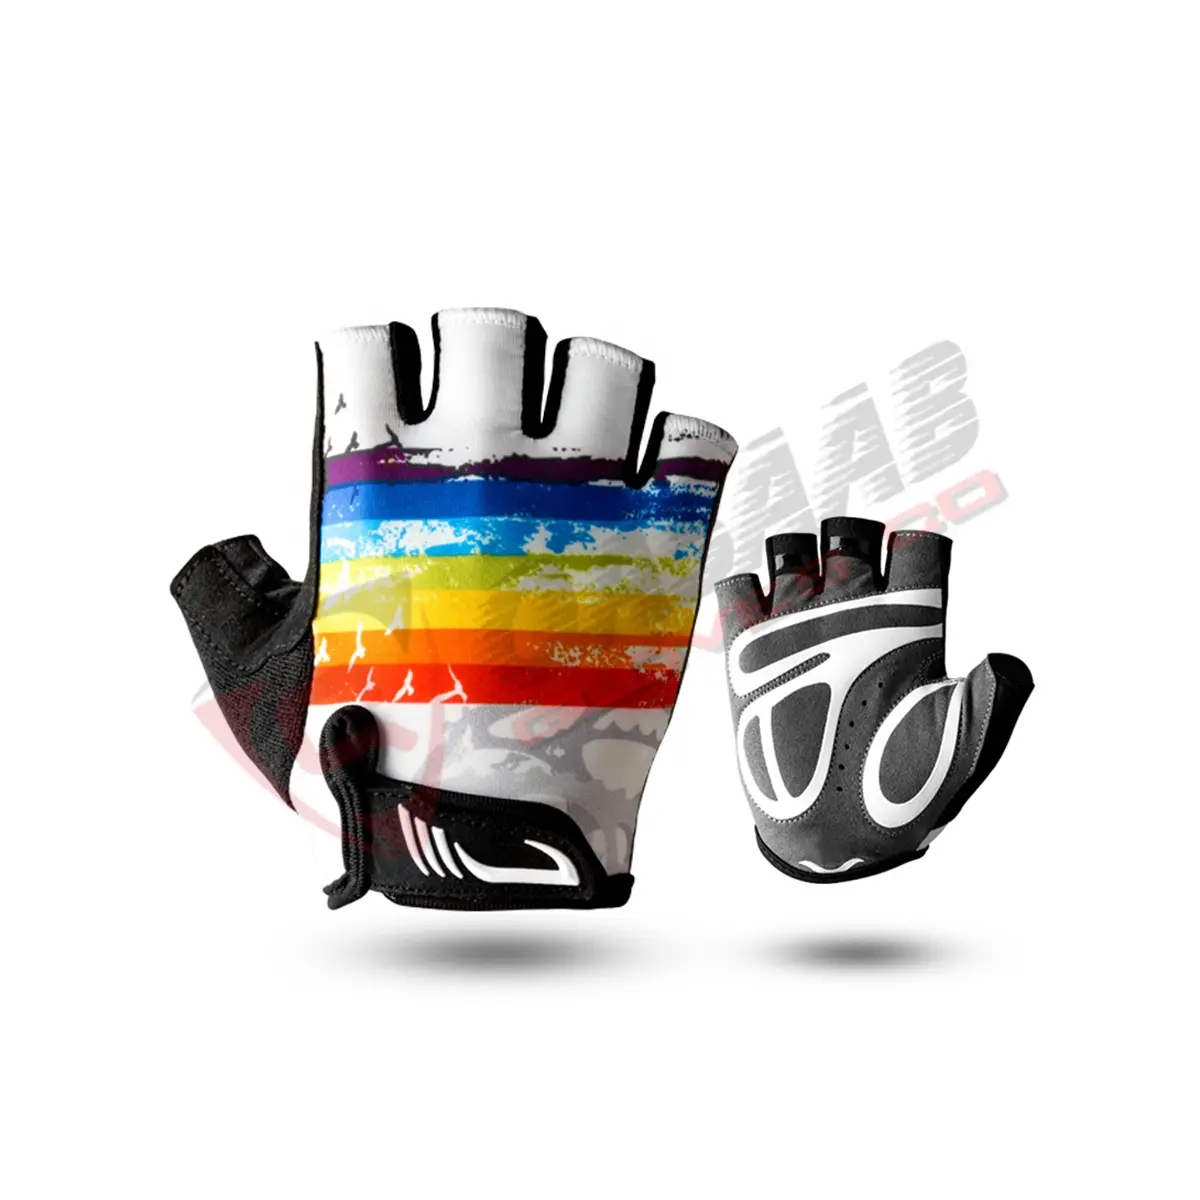 قفازات رياضية مخصصة بألوان مختلفة بدون أصابع للدراجات نصف أصبع قفازات رياضية للدراجات السباقية لون أسود للصالات الرياضية